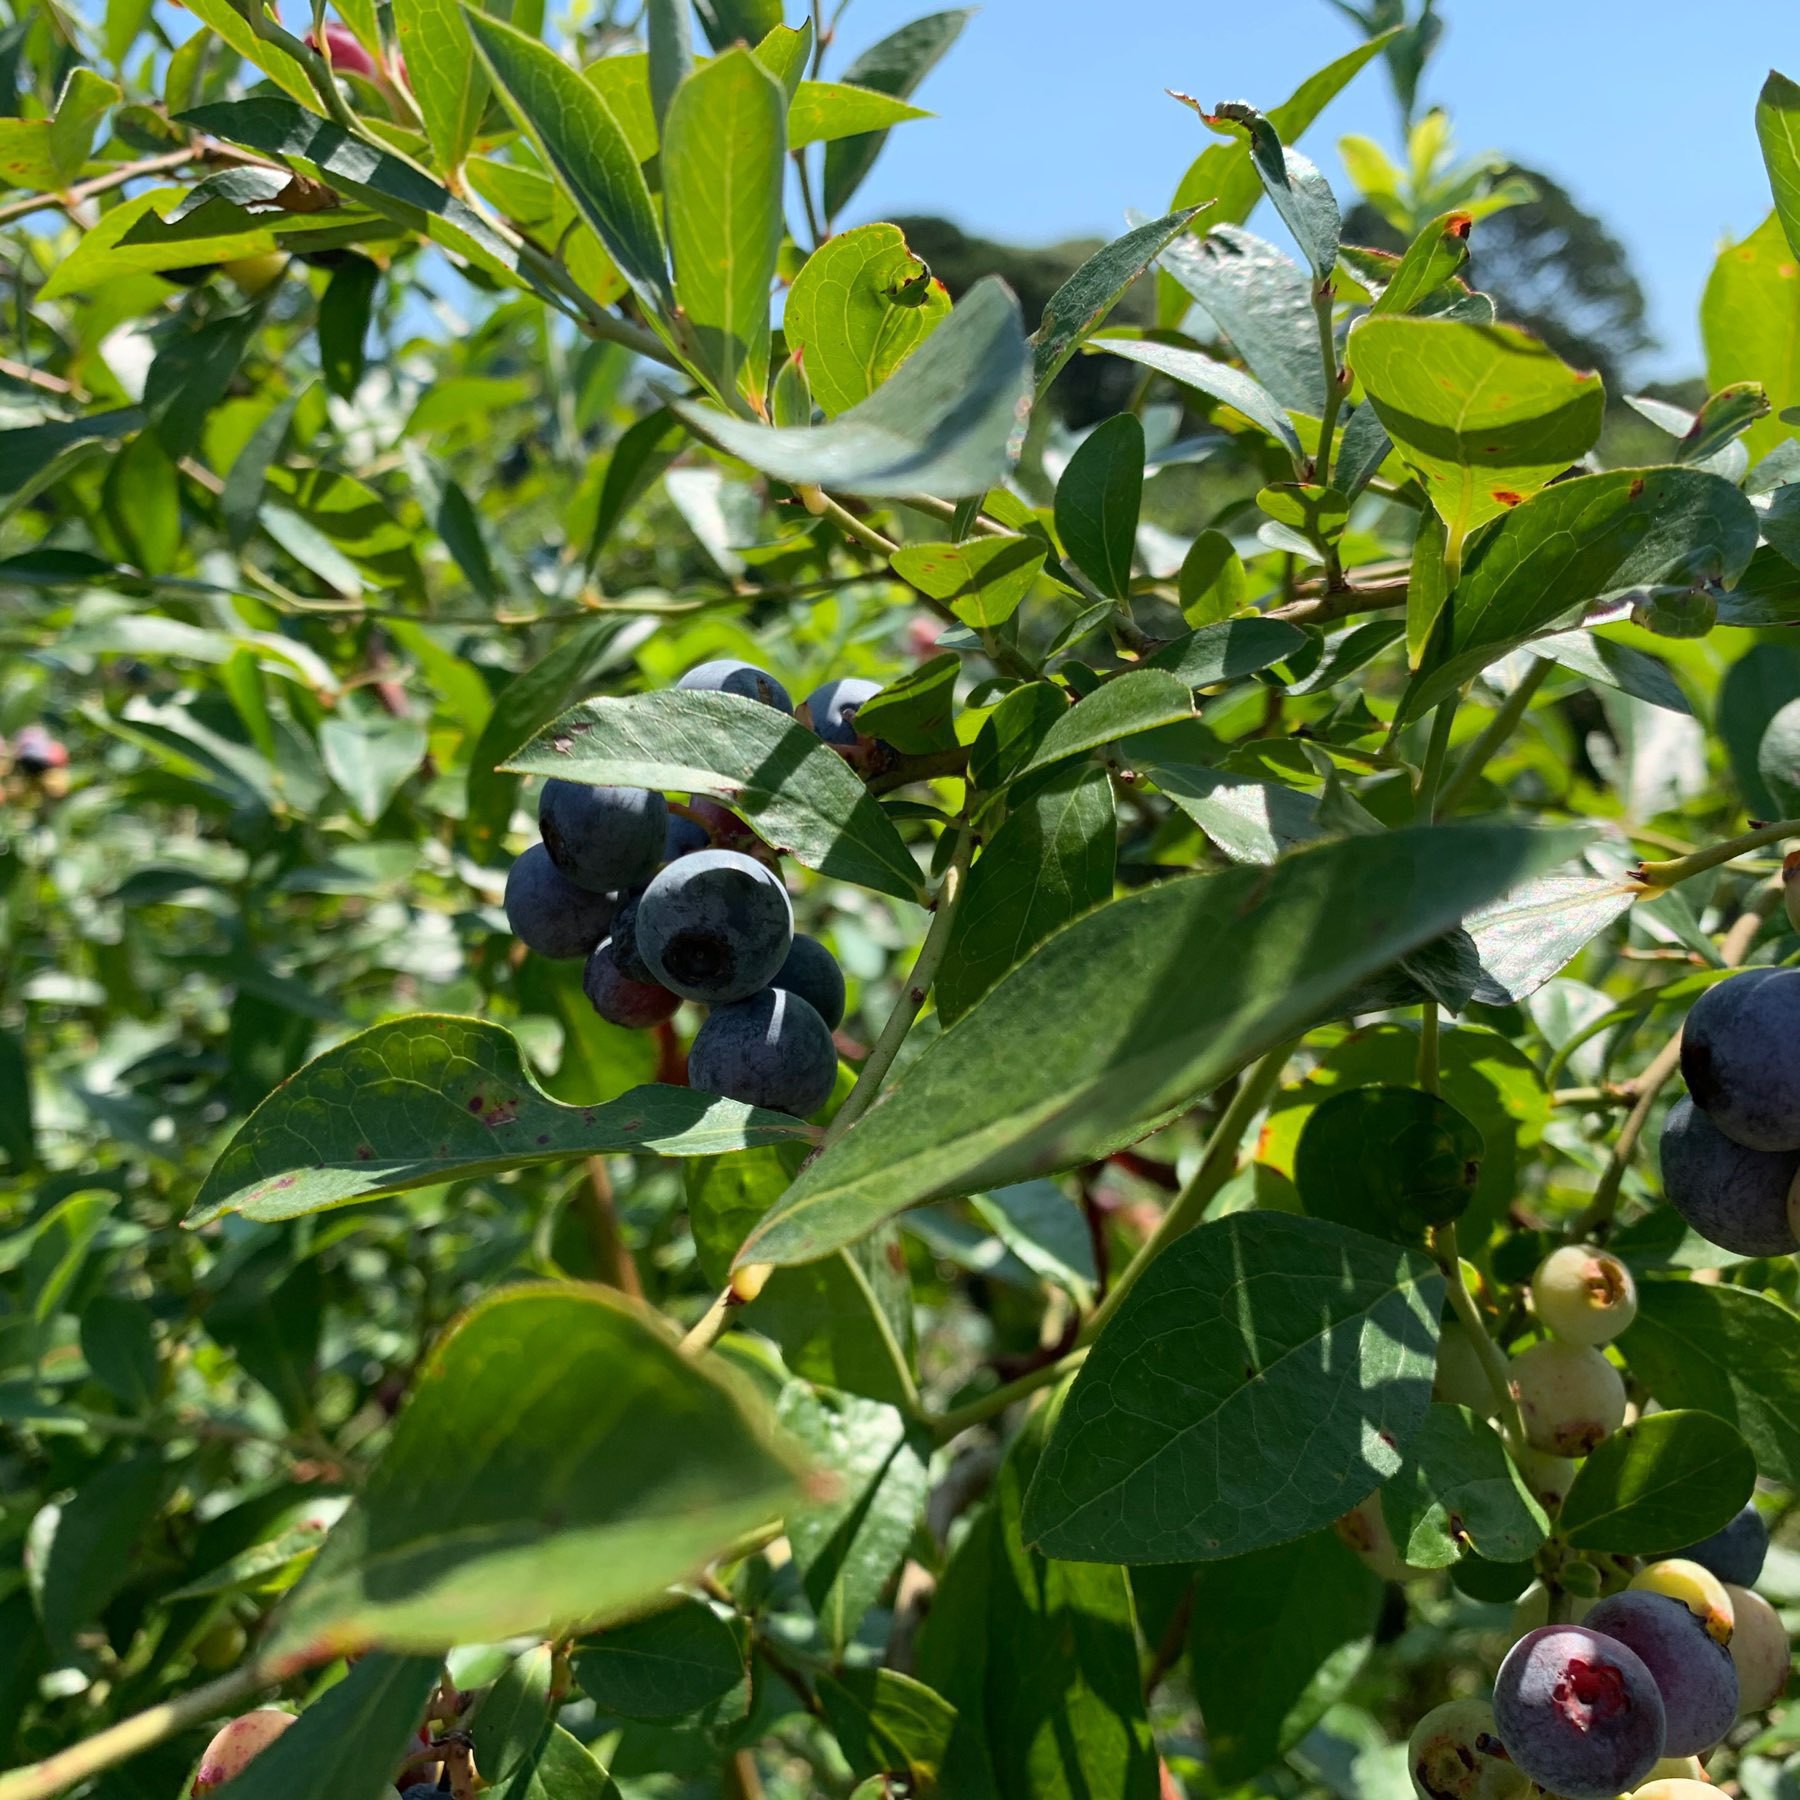 Blueberries on bush